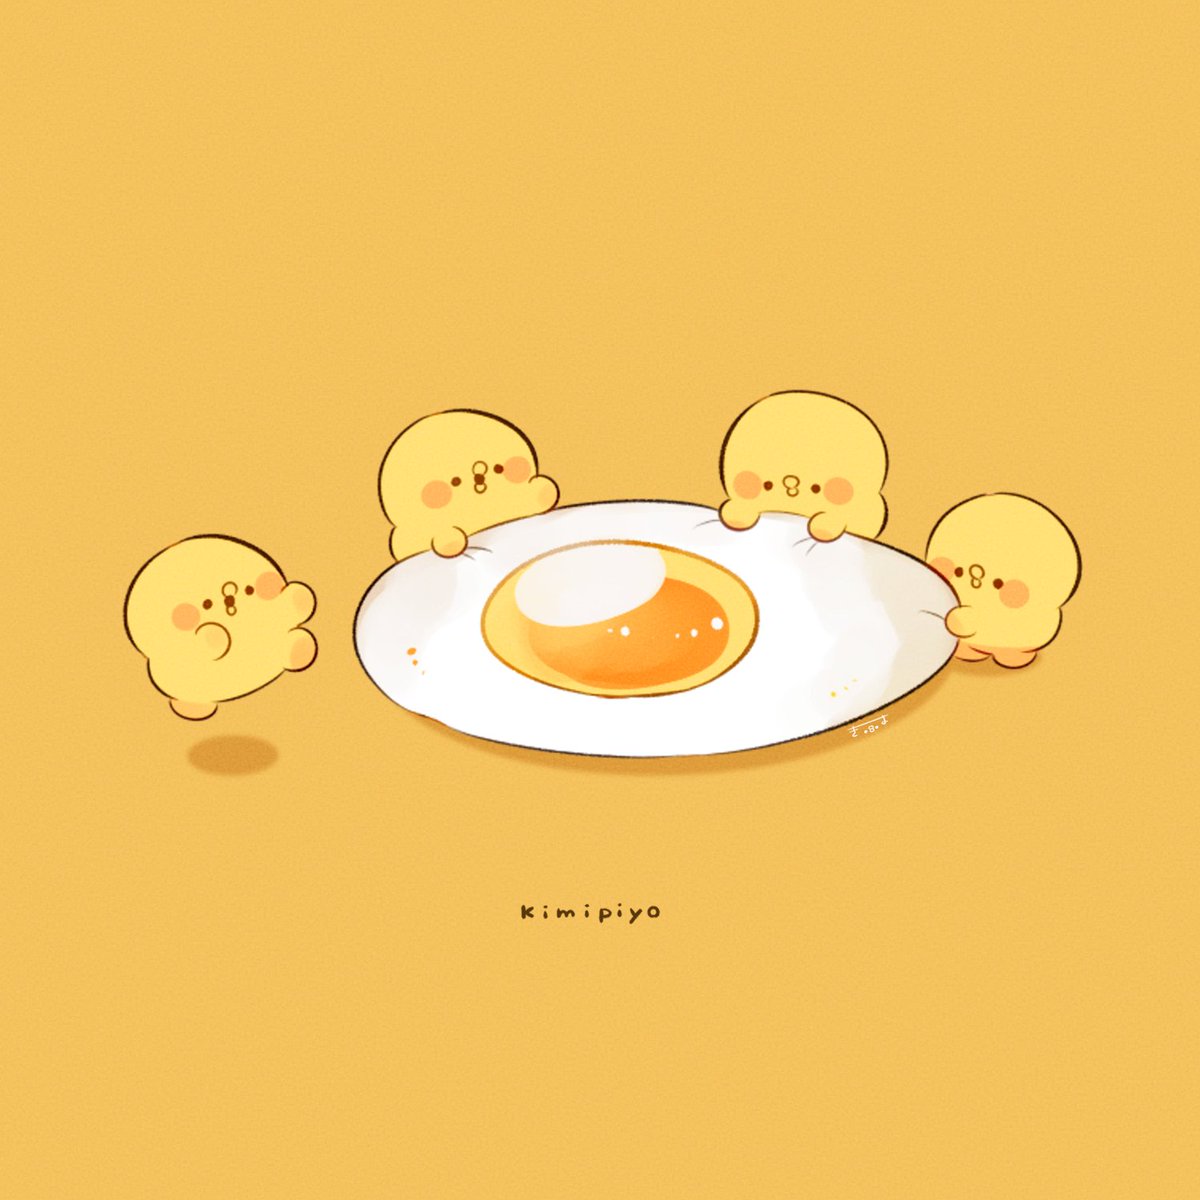 egg (food) fried egg food no humans egg bird chick  illustration images